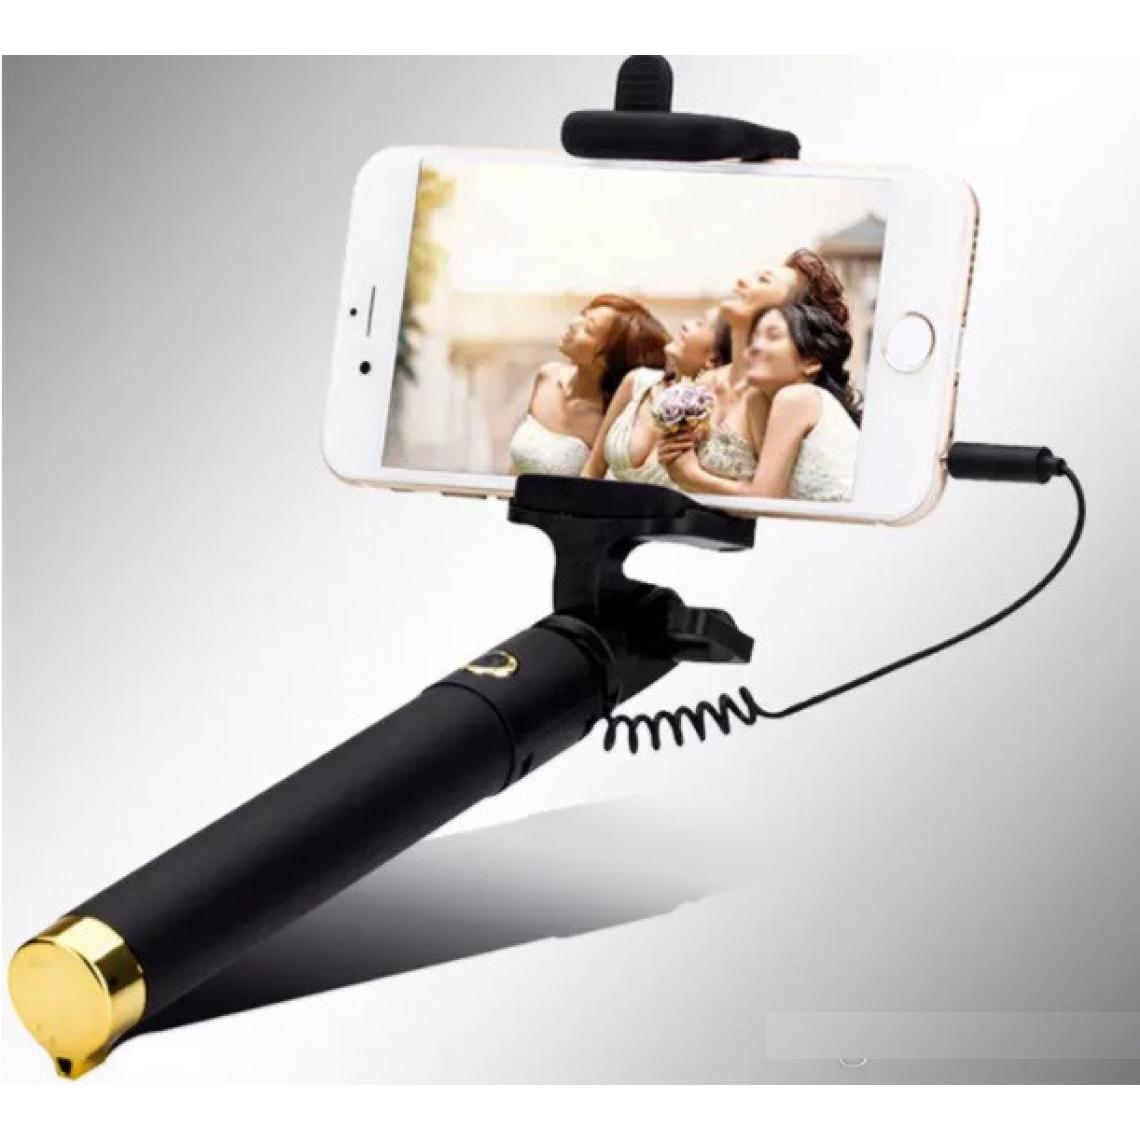 Shot - Perche Selfie Metal pour XIAOMI Redmi 7A Smartphone avec Cable Jack Selfie Stick Android IOS Reglable Bouton Photo (OR) - Autres accessoires smartphone